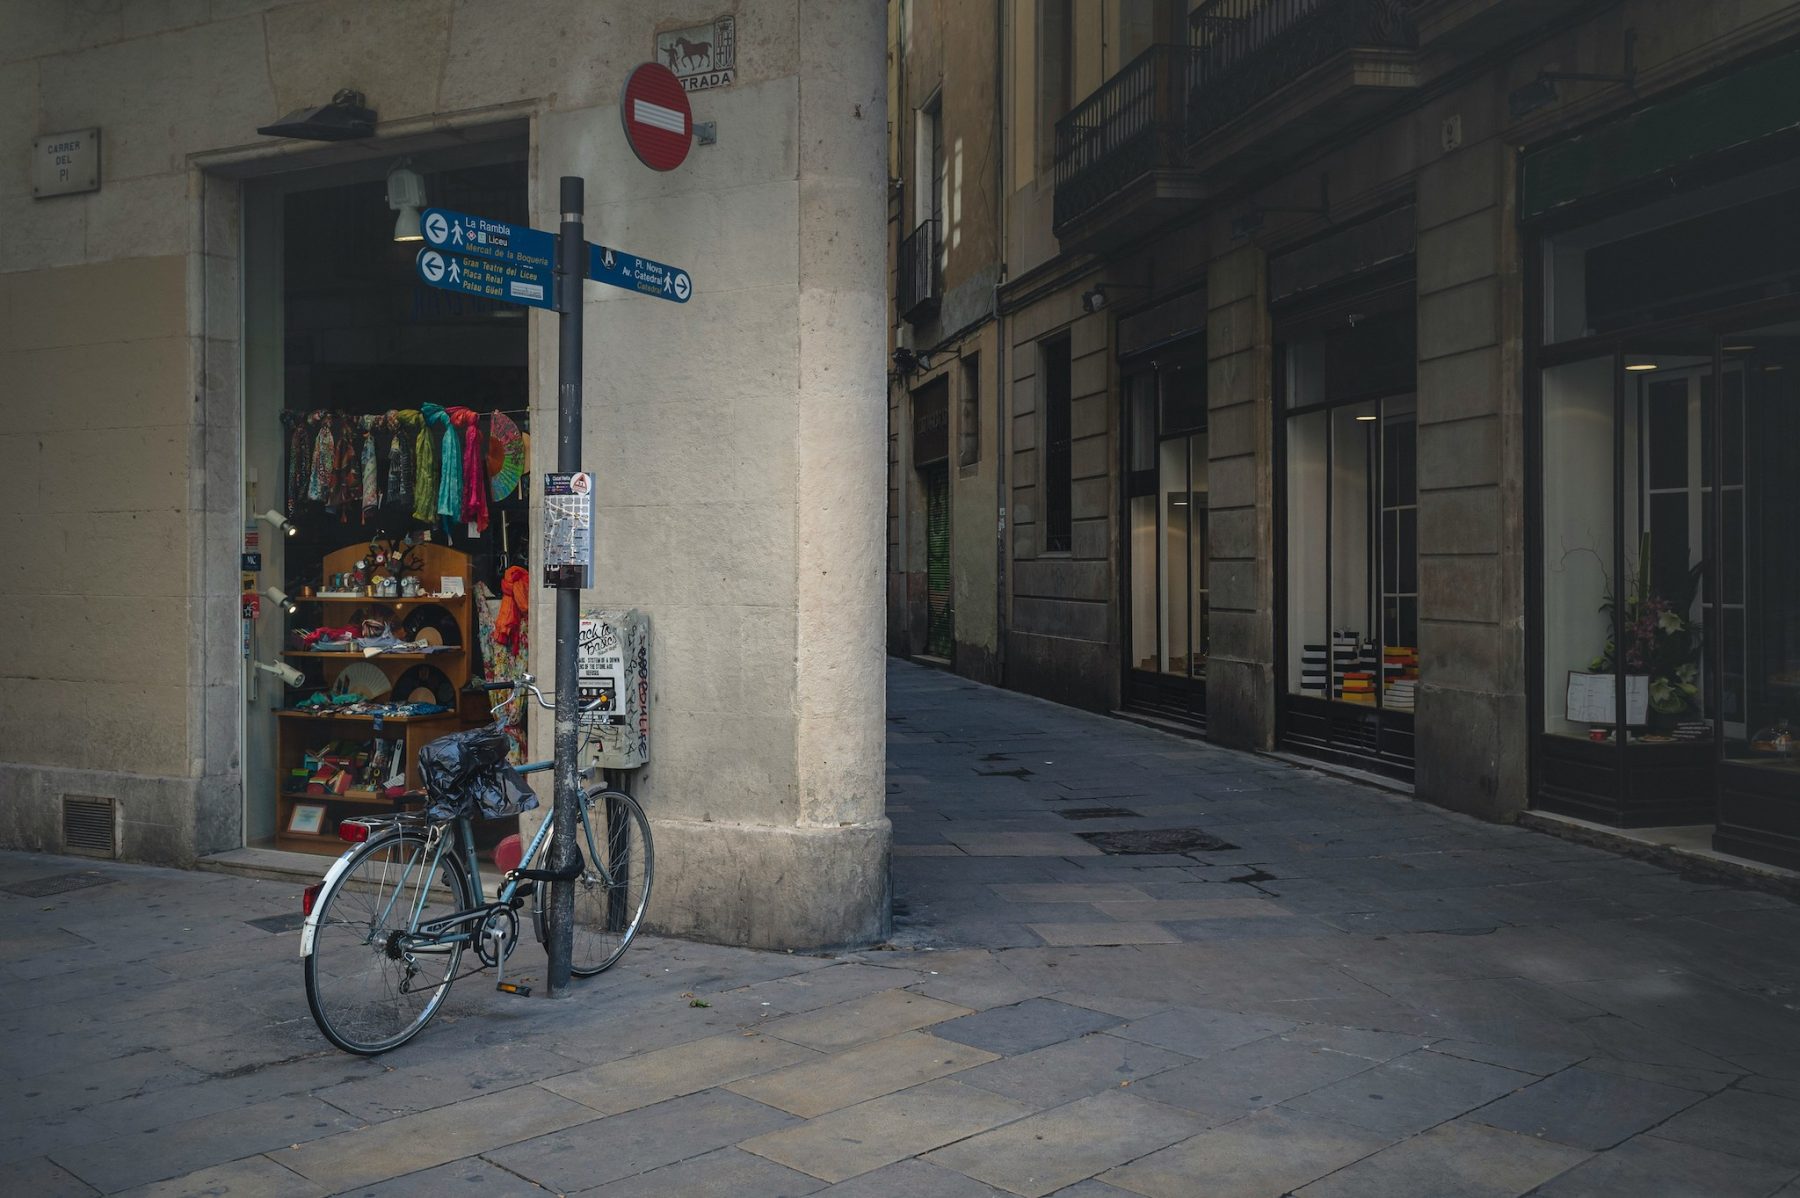 Zelf een fiets huren in Barcelona en op fietstour gaan